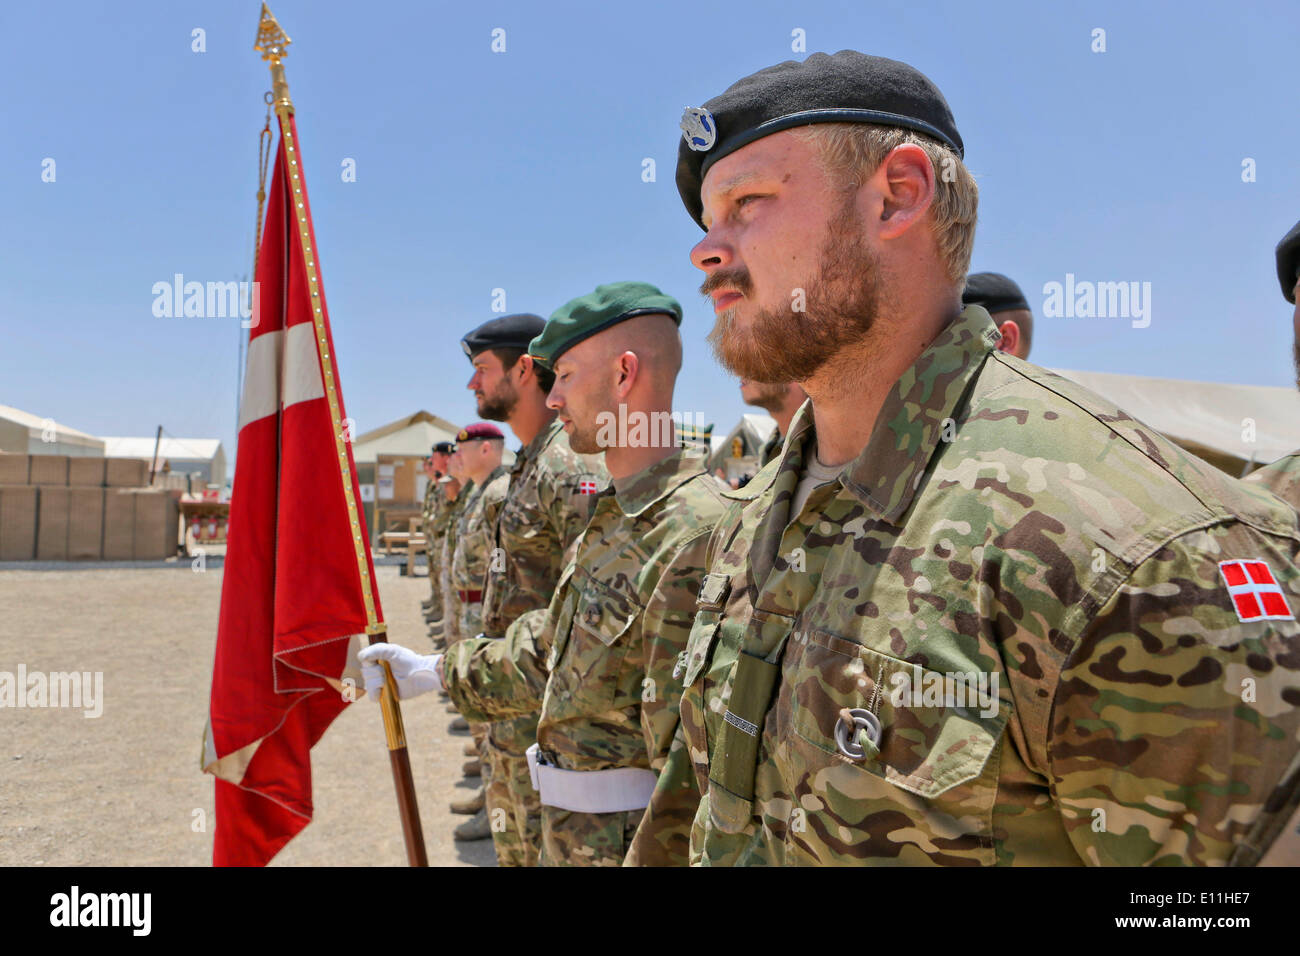 Soldados del ejército danés están formados durante el final de la operación ceremonia que marcó el final de las operaciones de combate en Afganistán danés el 20 de mayo de 2014 en el campamento de Viking, provincia de Helmand, Afganistán. Foto de stock